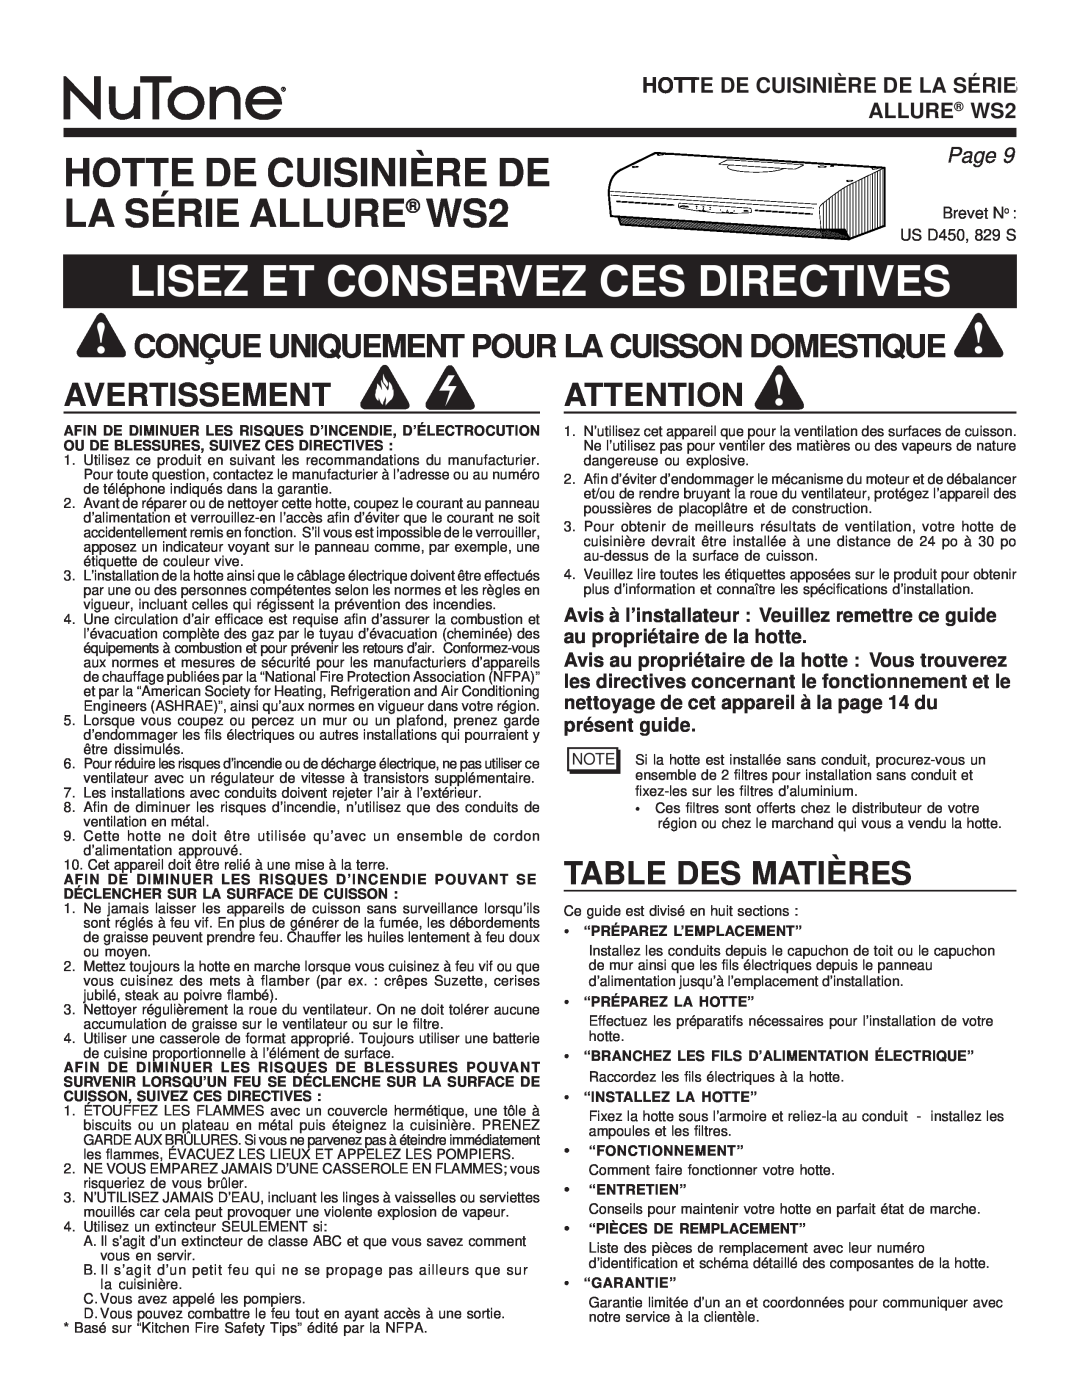 NuTone WS2 Lisez Et Conservez Ces Directives, Avertissement, Table Des Matières, Hotte De Cuisinière De La Série, Page 